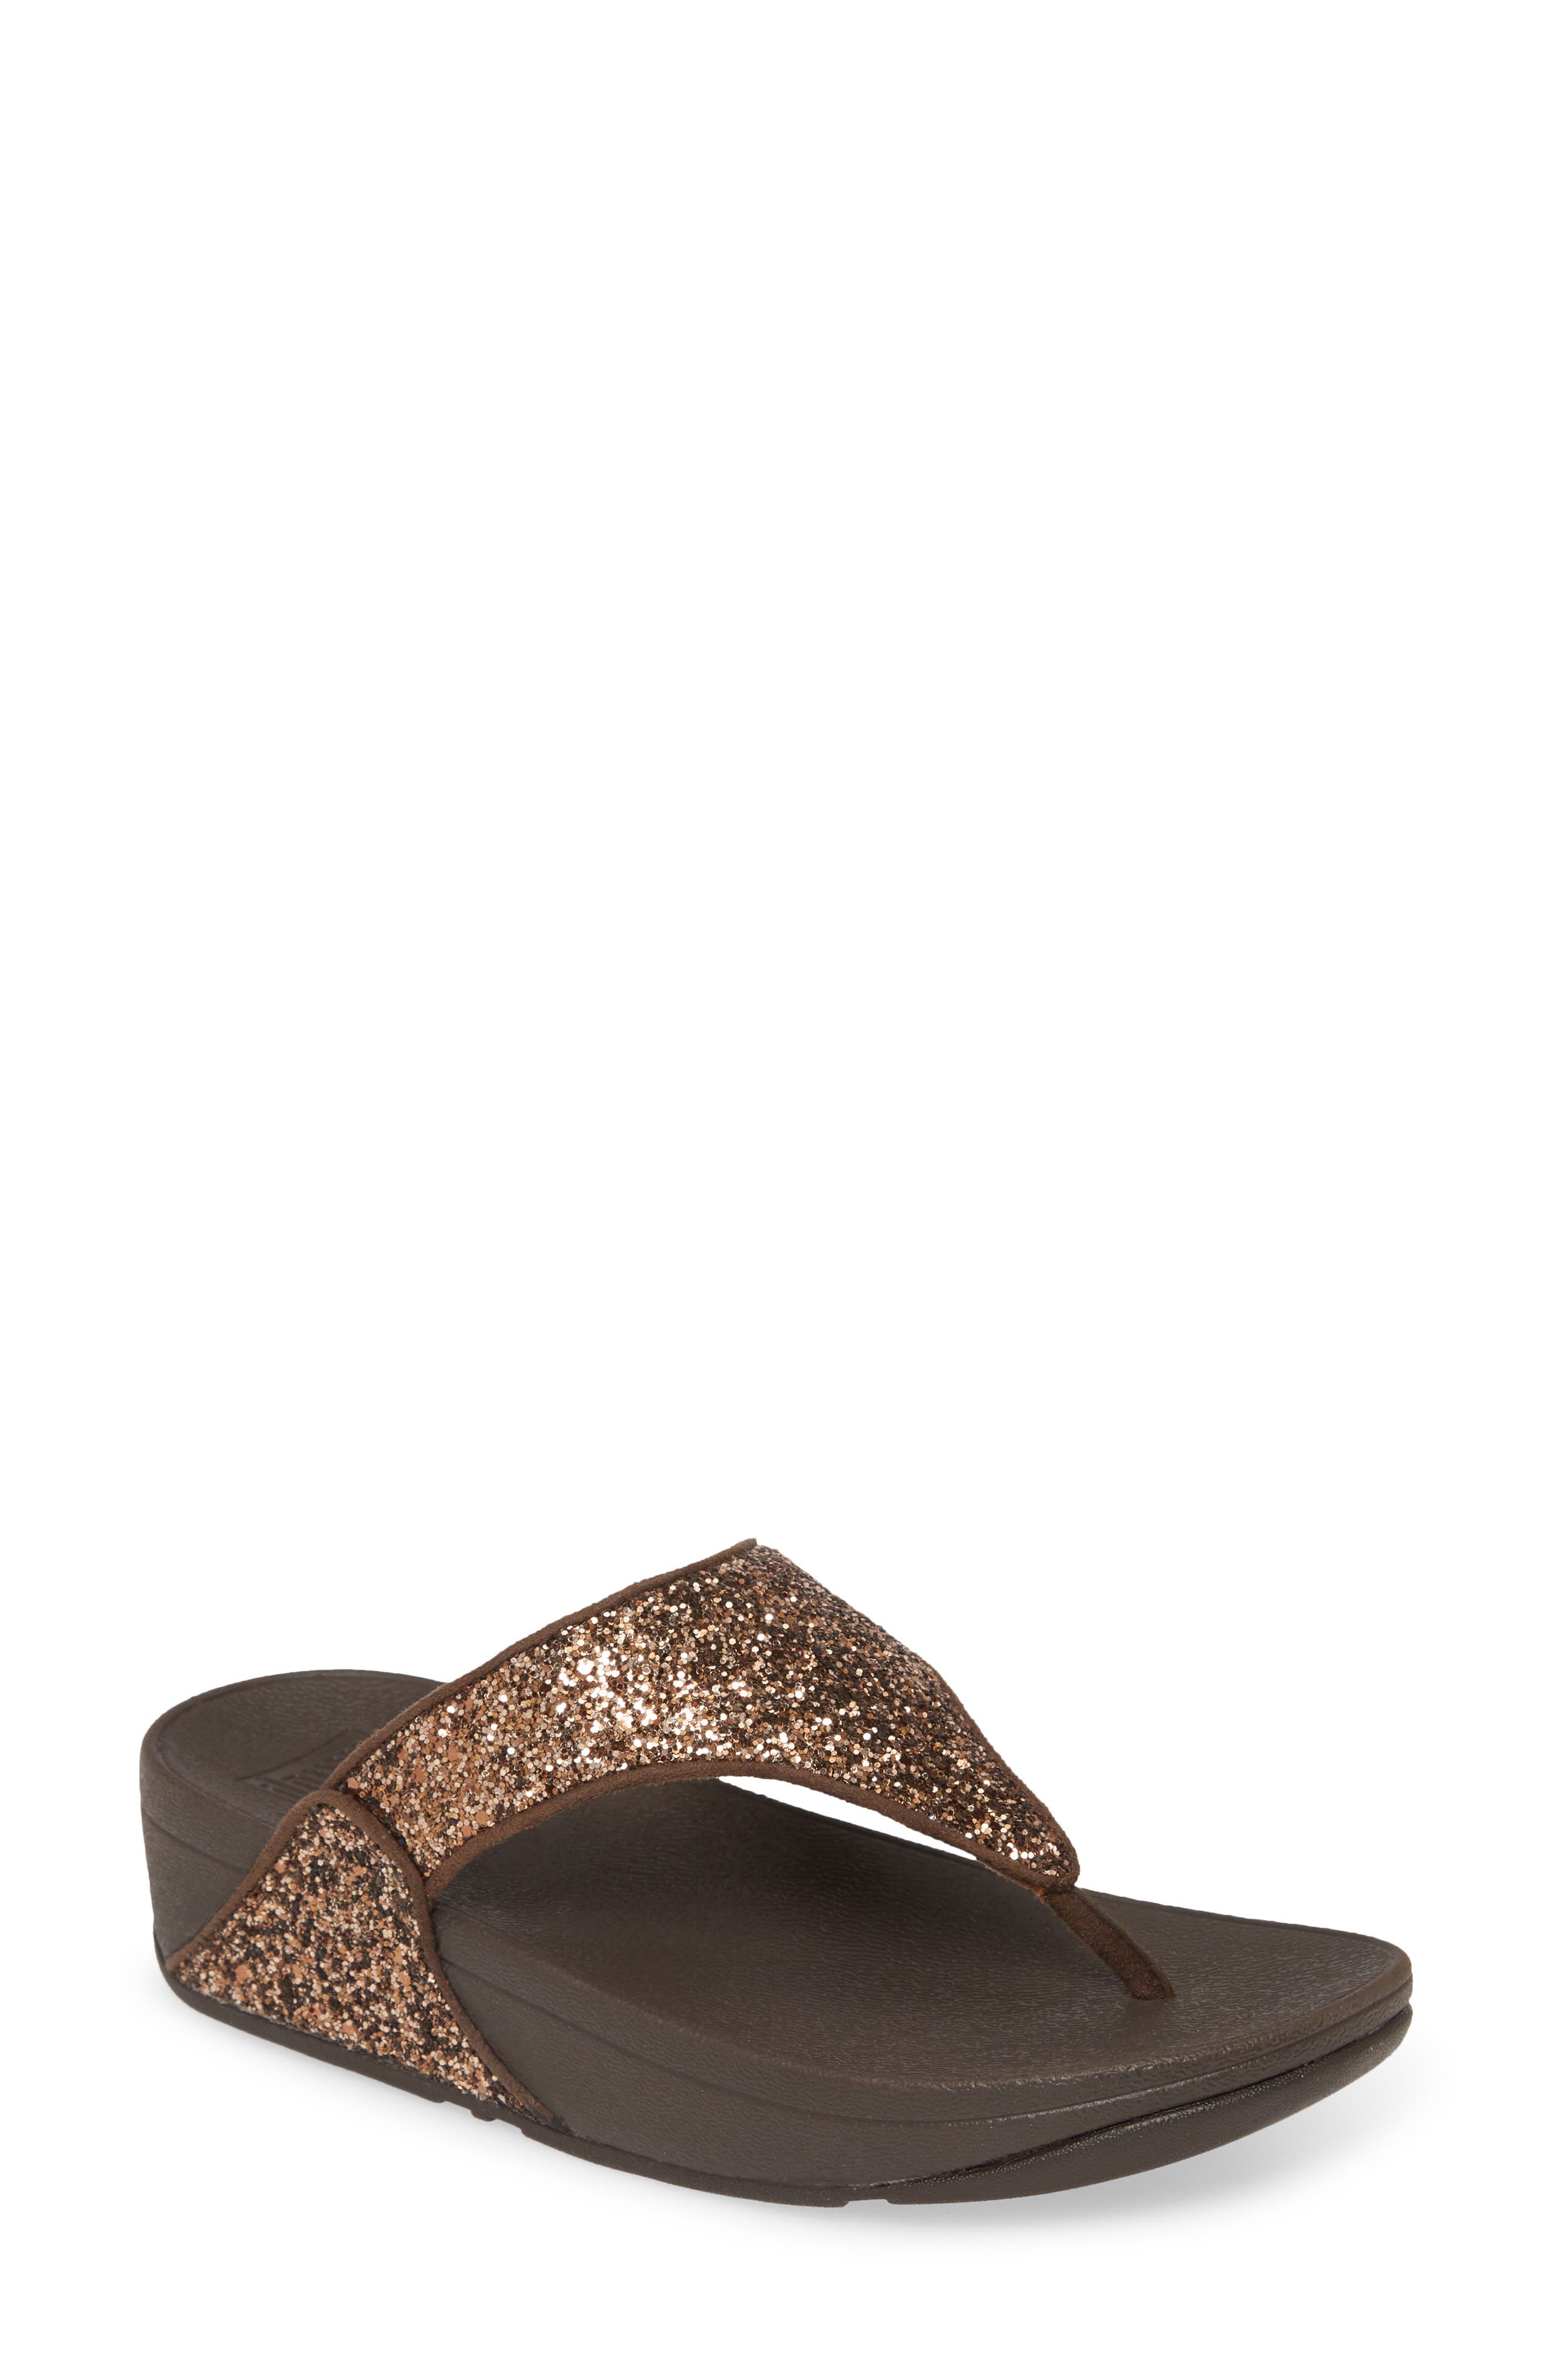 Fitflop Lulu Glitter Thong Toe Wedge Sandal In Chocolate Metallic